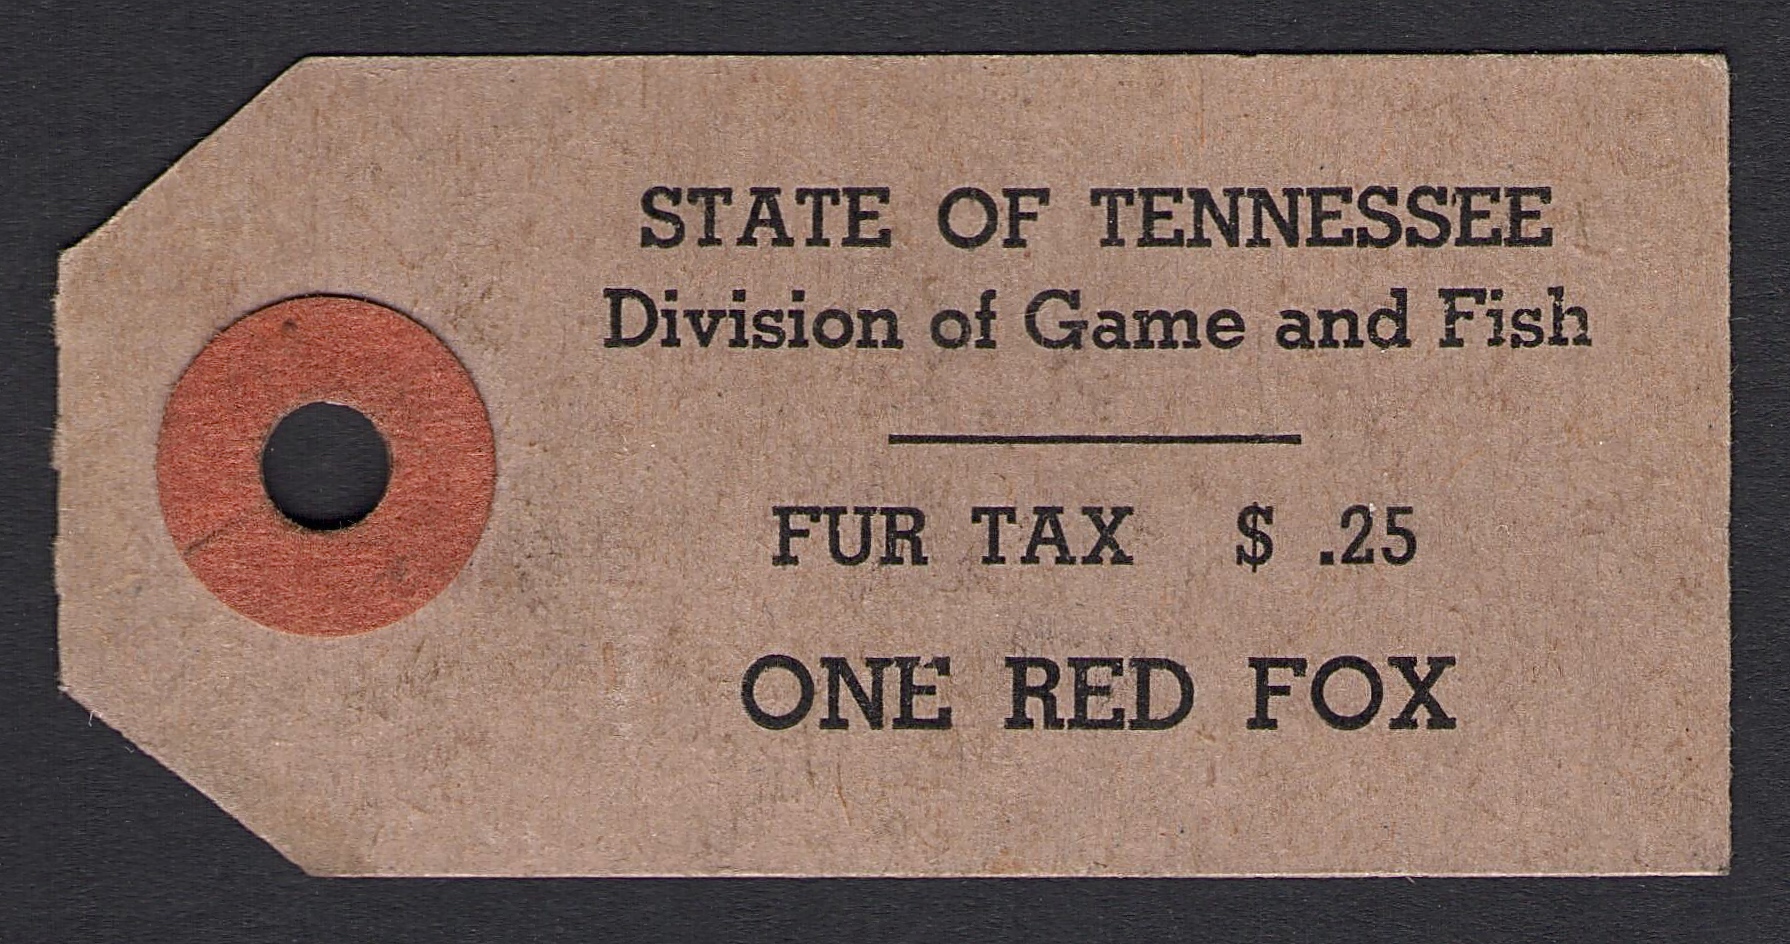 Red Fox Fur Tax Tennessee